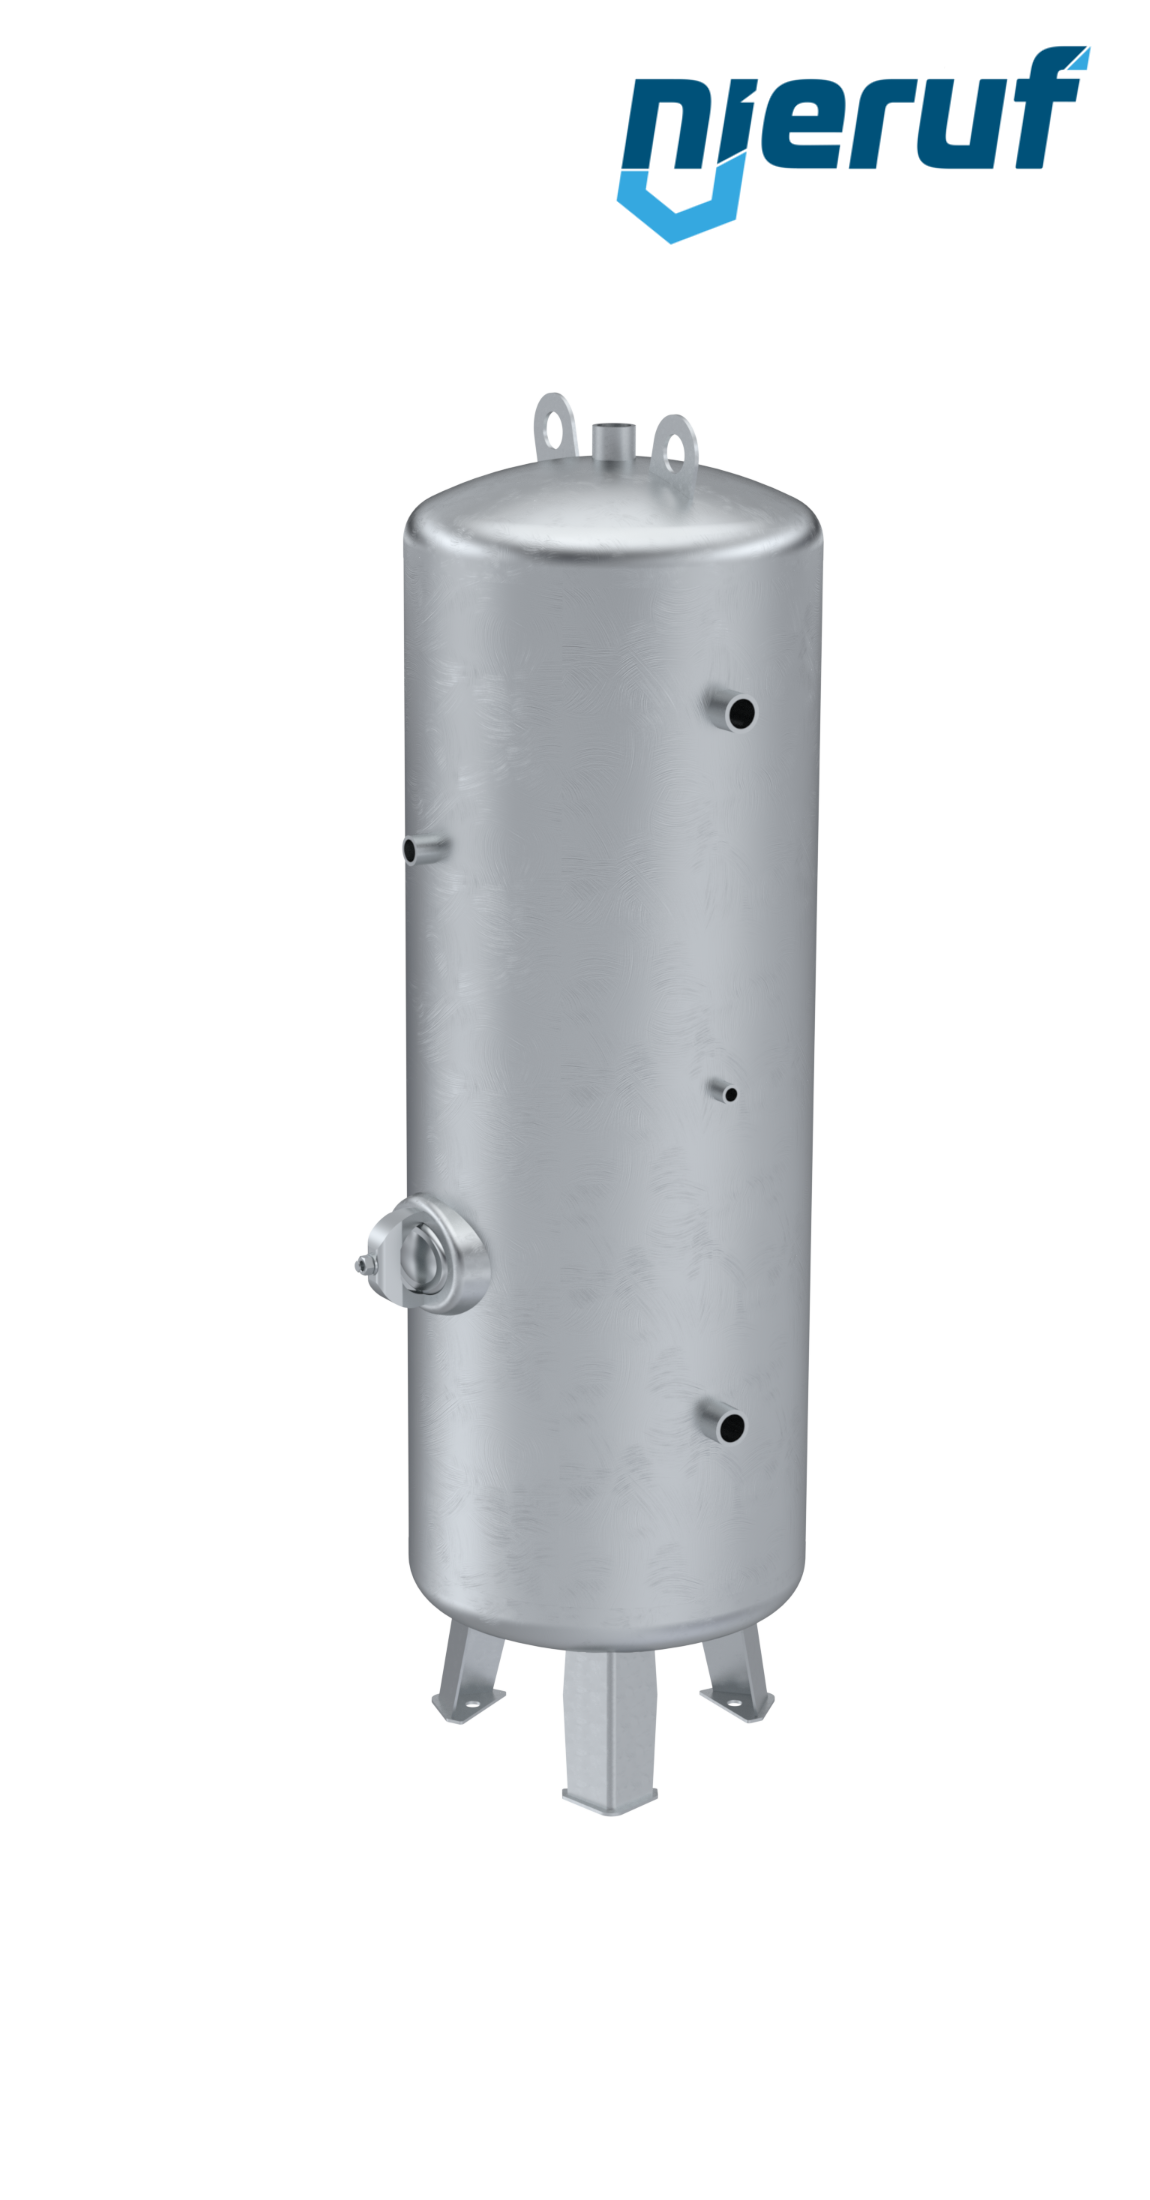 Serbatoio a pressione verticale BE01 750 litri, 0-11 bar, acciaio zincato